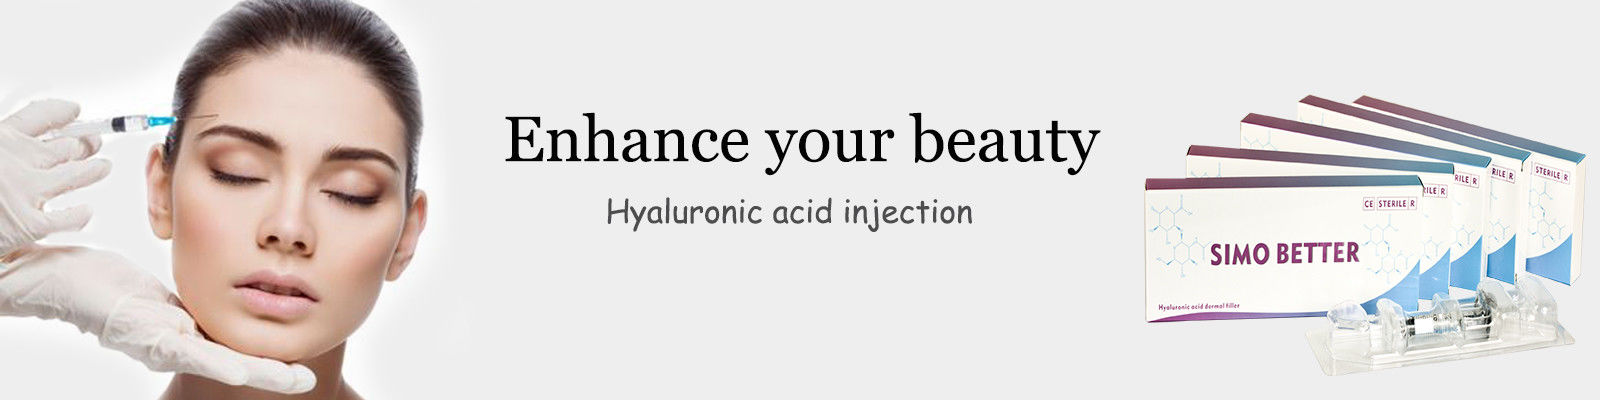 Inyección del ácido hialurónico